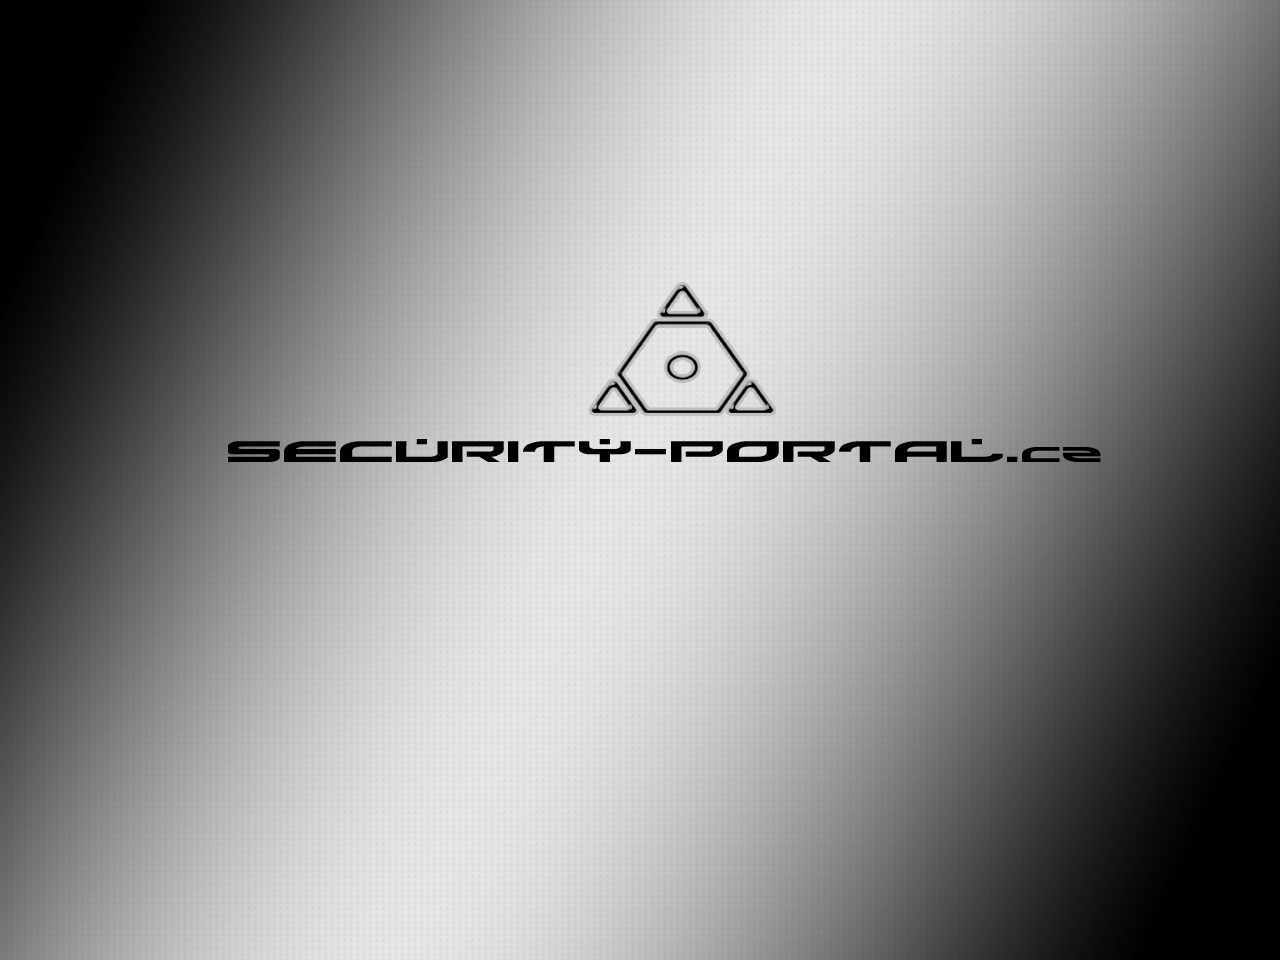 Security Portal wallpaper 4